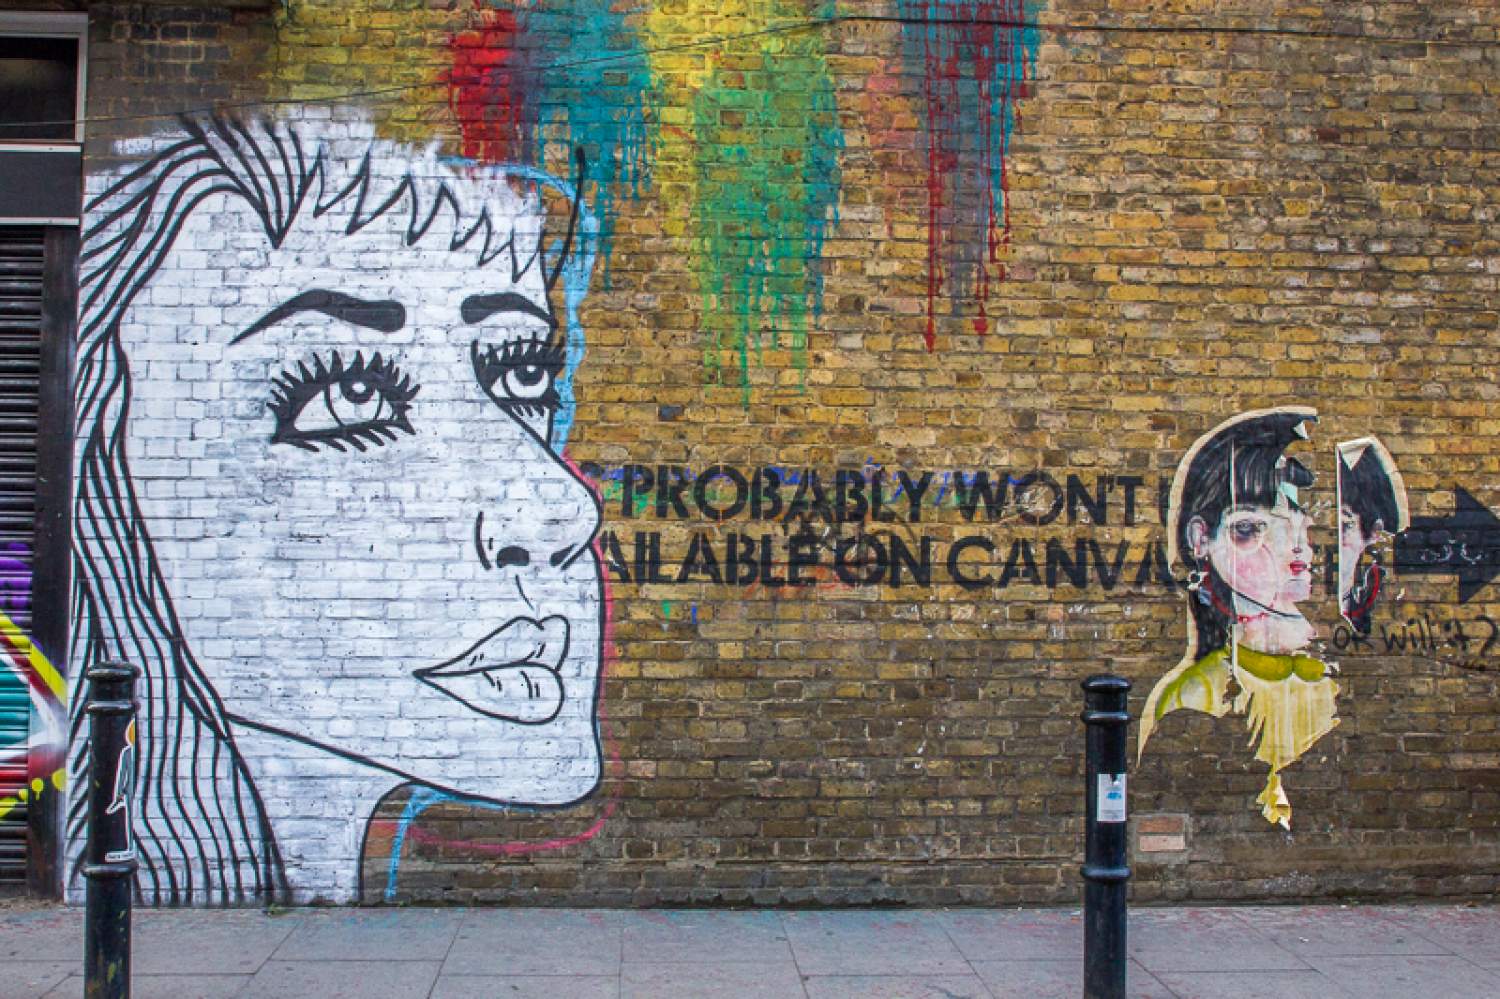 Filles en graffiti et imprimé, Londres: "Probably won't be available on canvas"